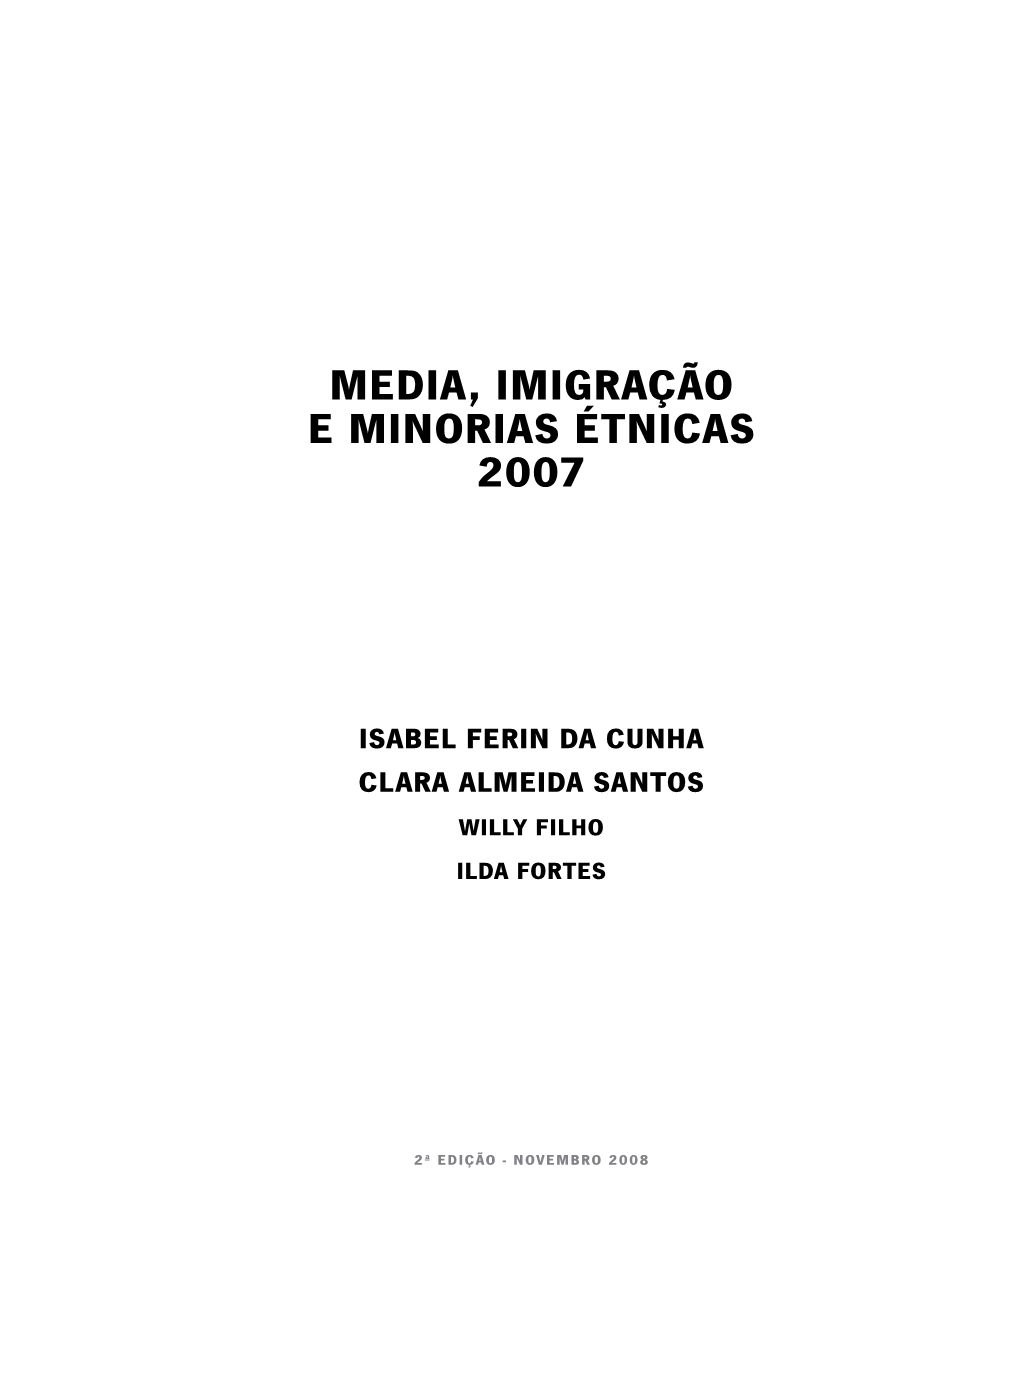 Media, Imigração E Minorias Étnicas 2007